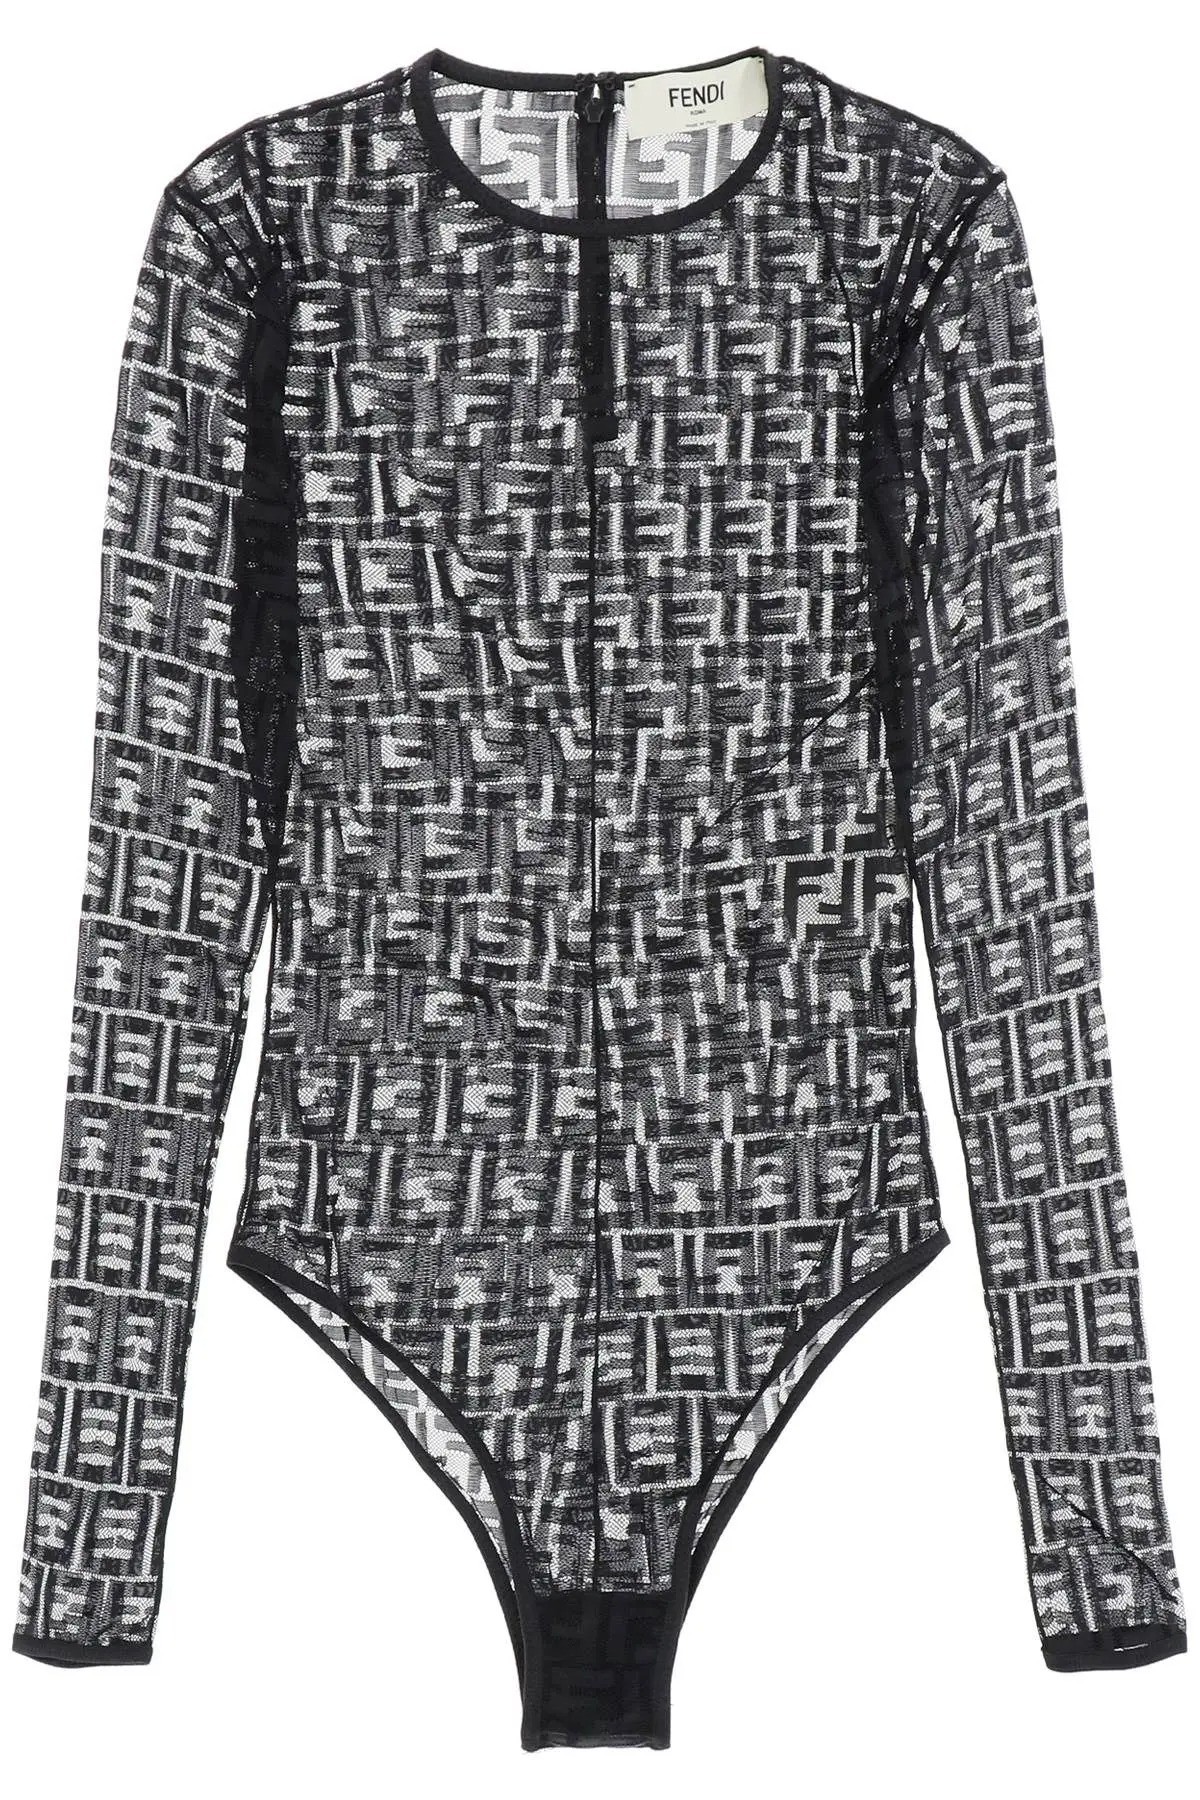 Fendi Black Lace BodySuit – RCR Luxury Boutique